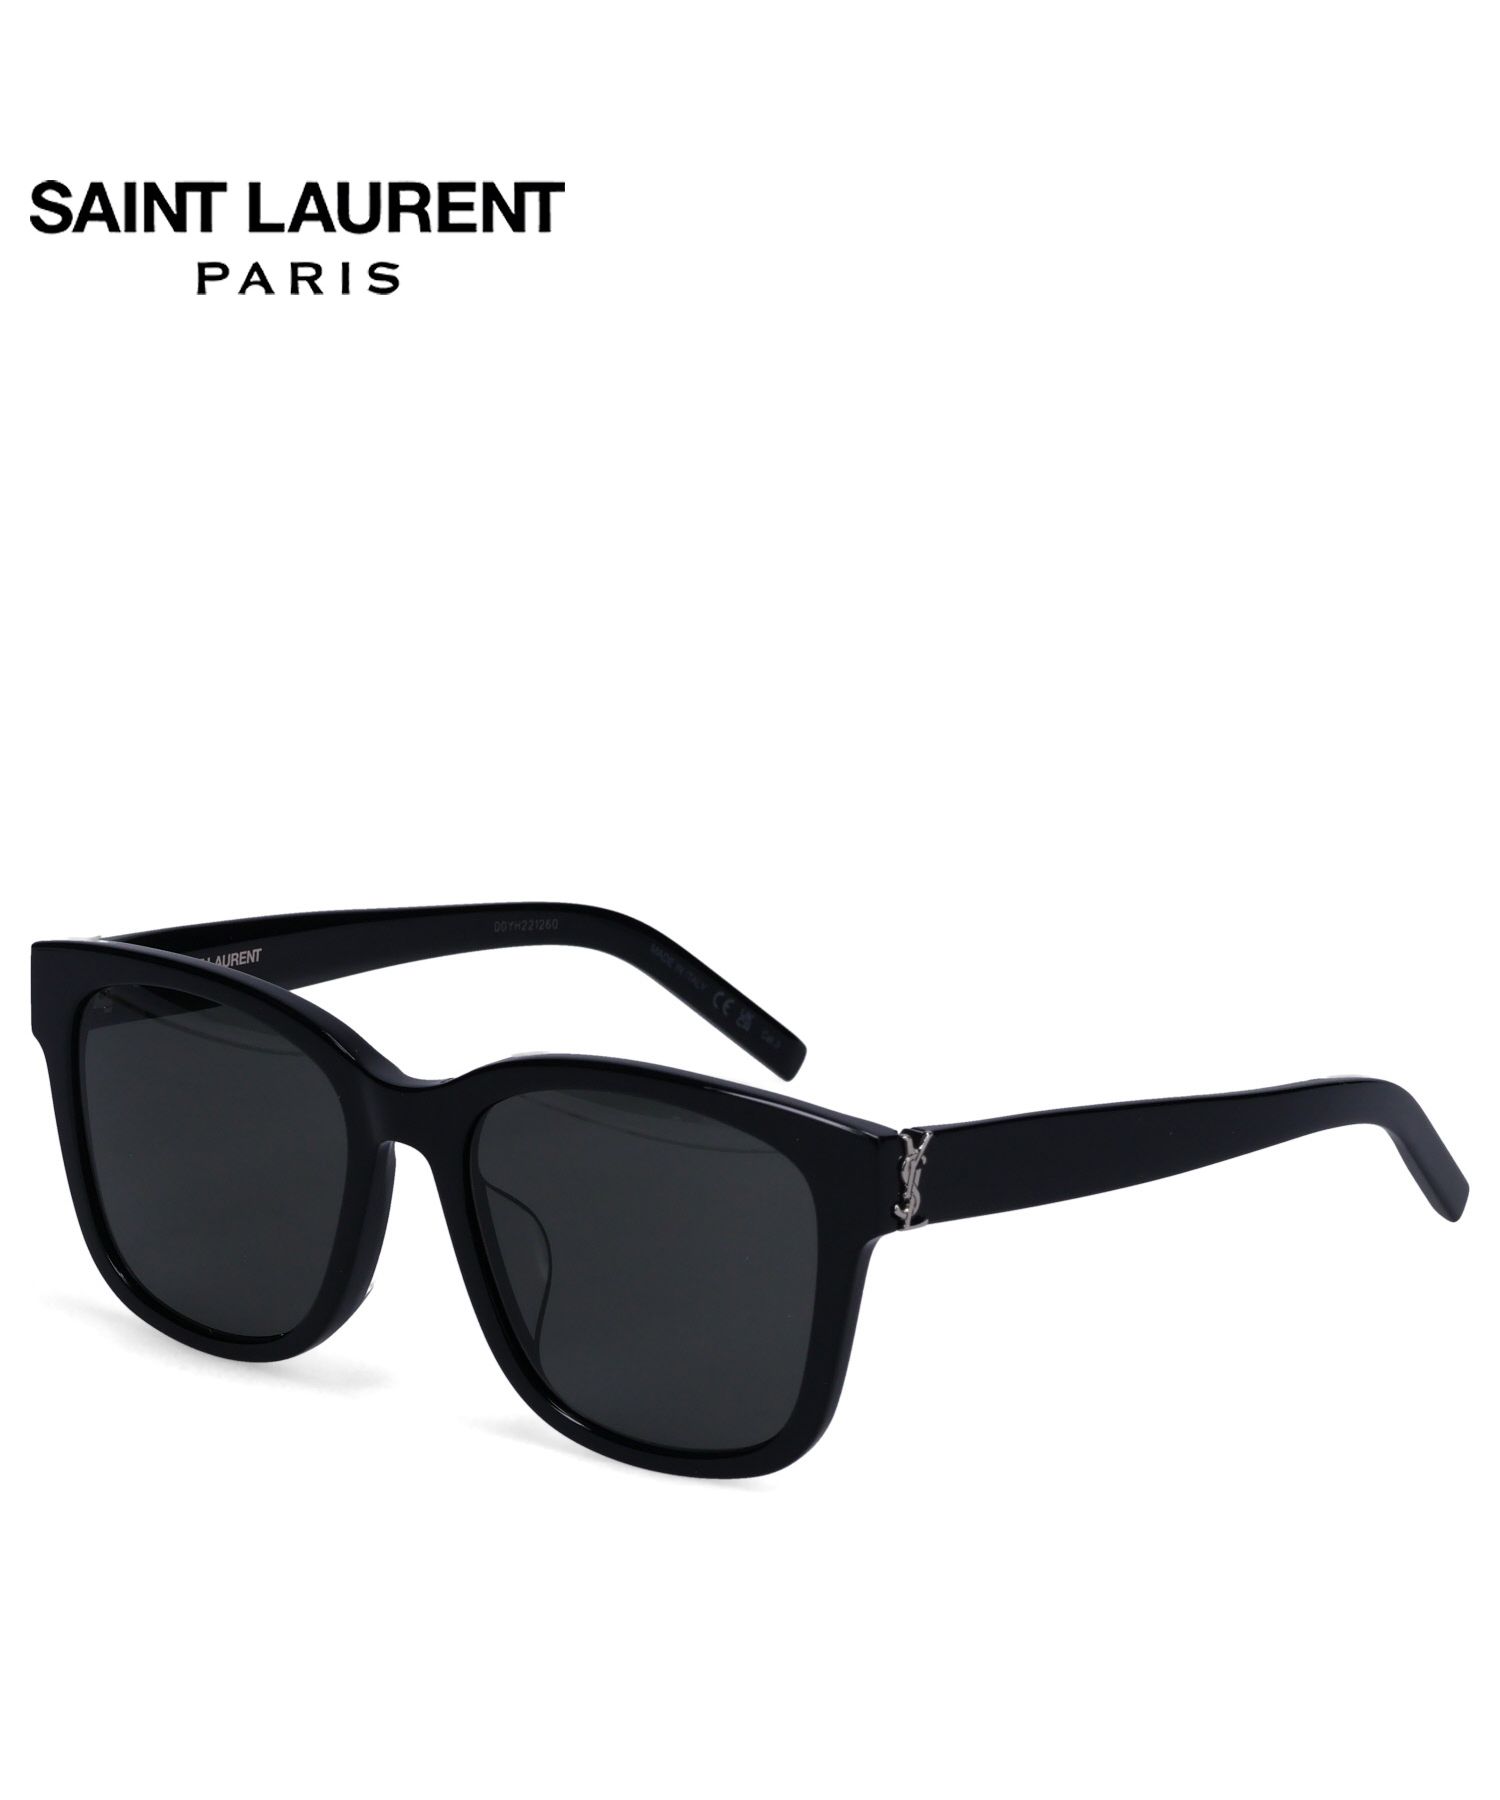 Saint Laurent サングラス - 小物